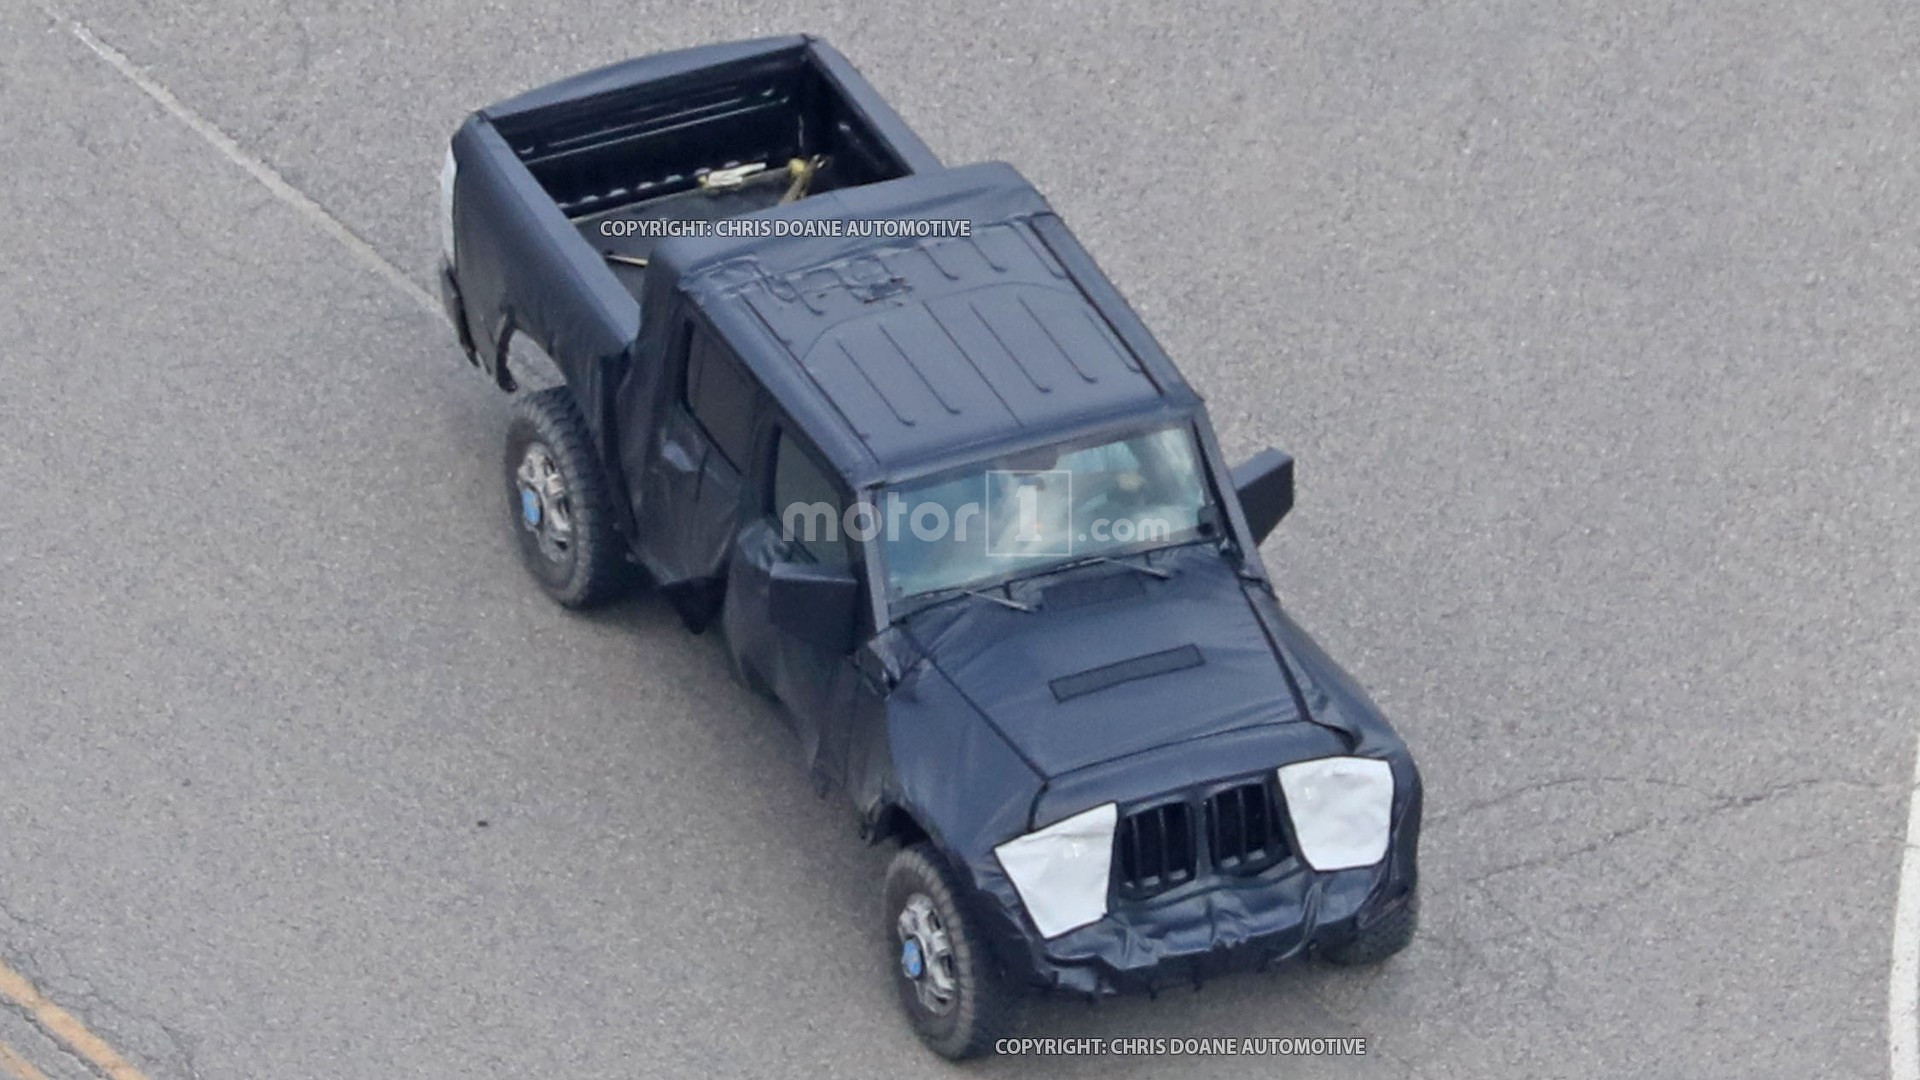 jeep-wrangler-pickup-truck-spy-photo.jpg